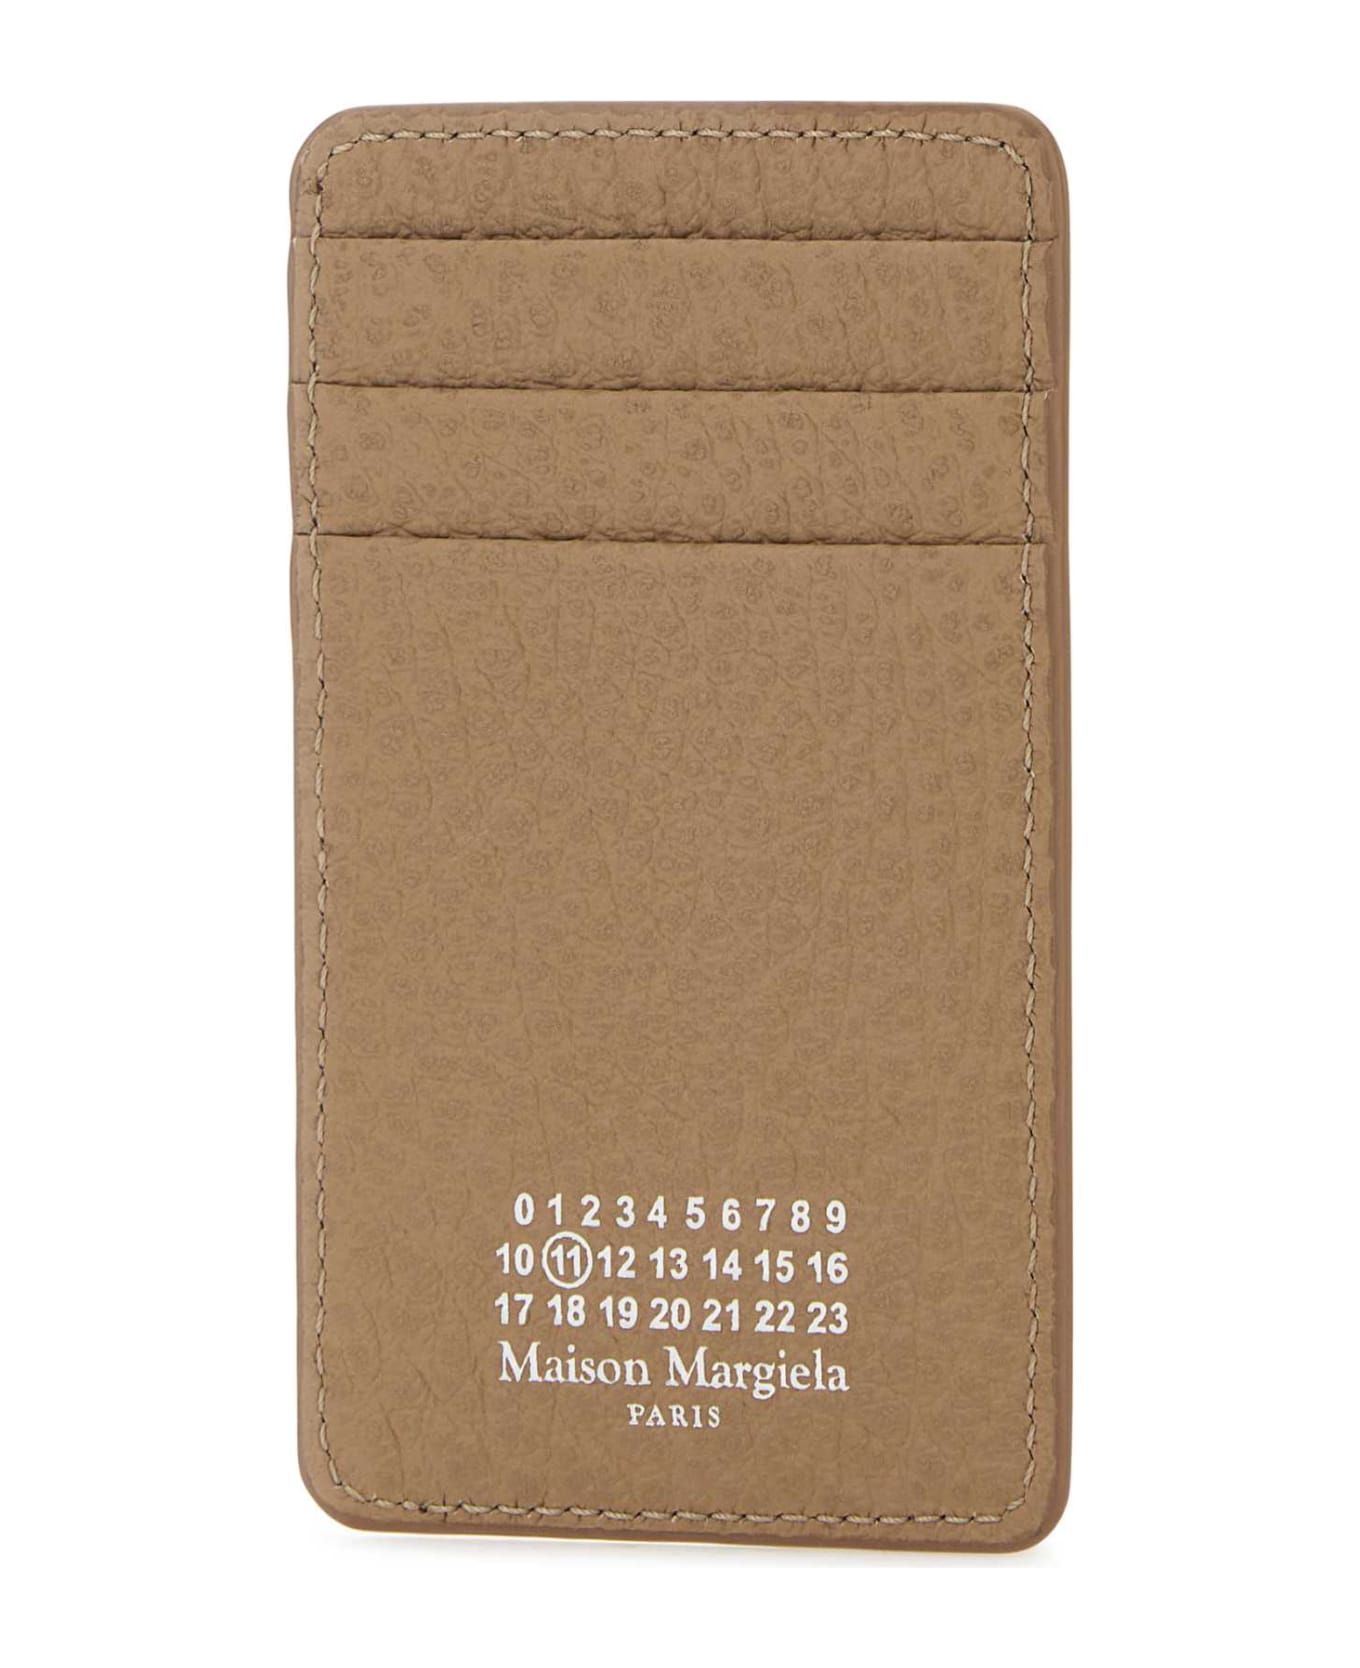 Maison Margiela Beige Leather Card Holder - BICHE